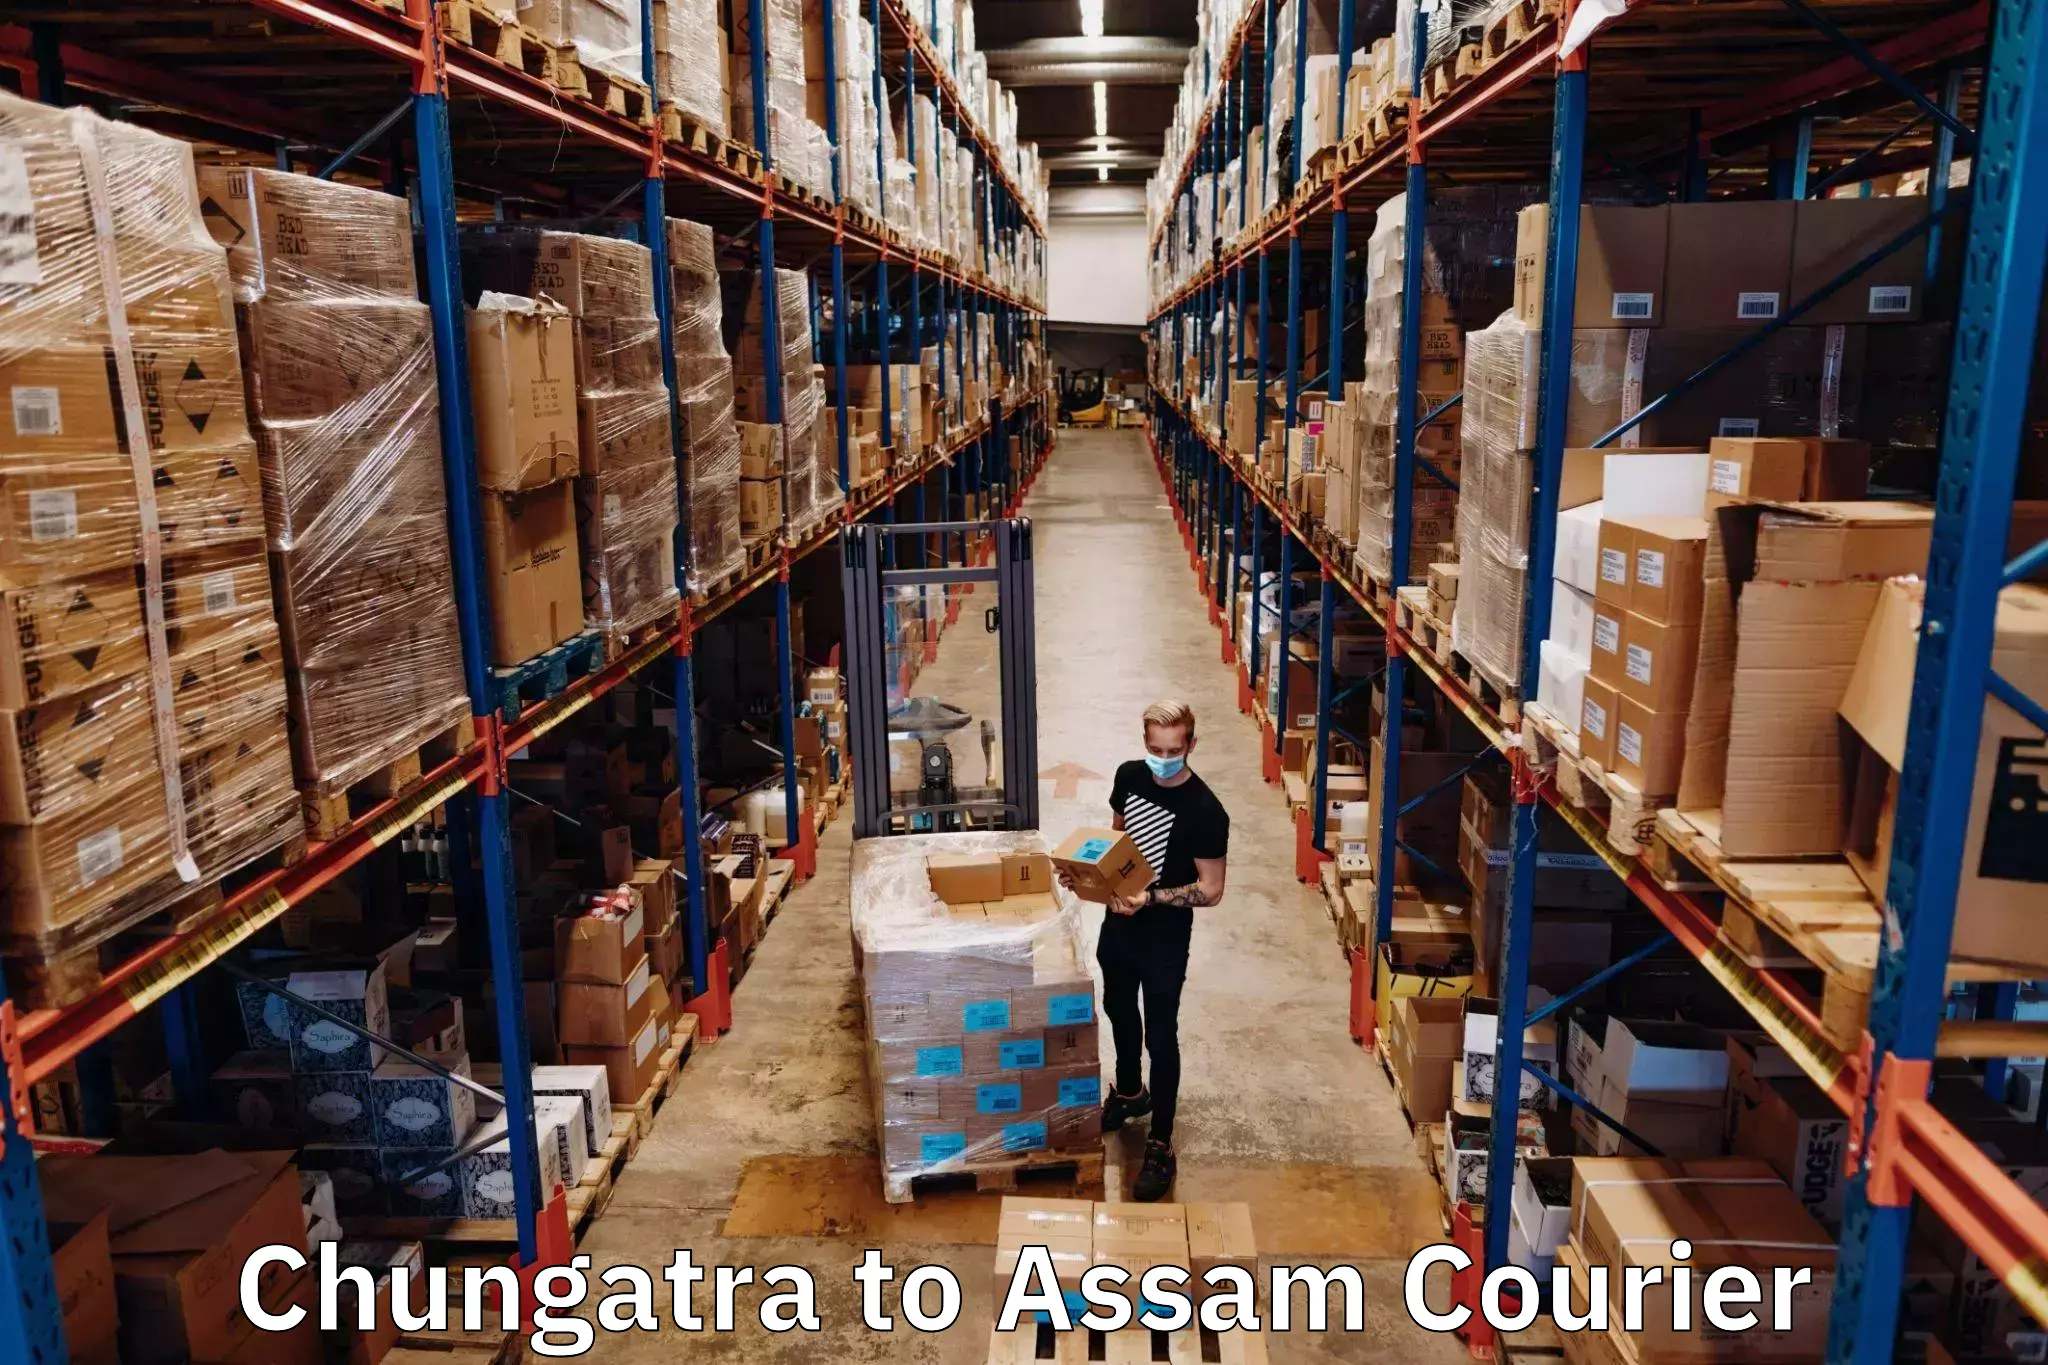 Flexible parcel services Chungatra to Assam